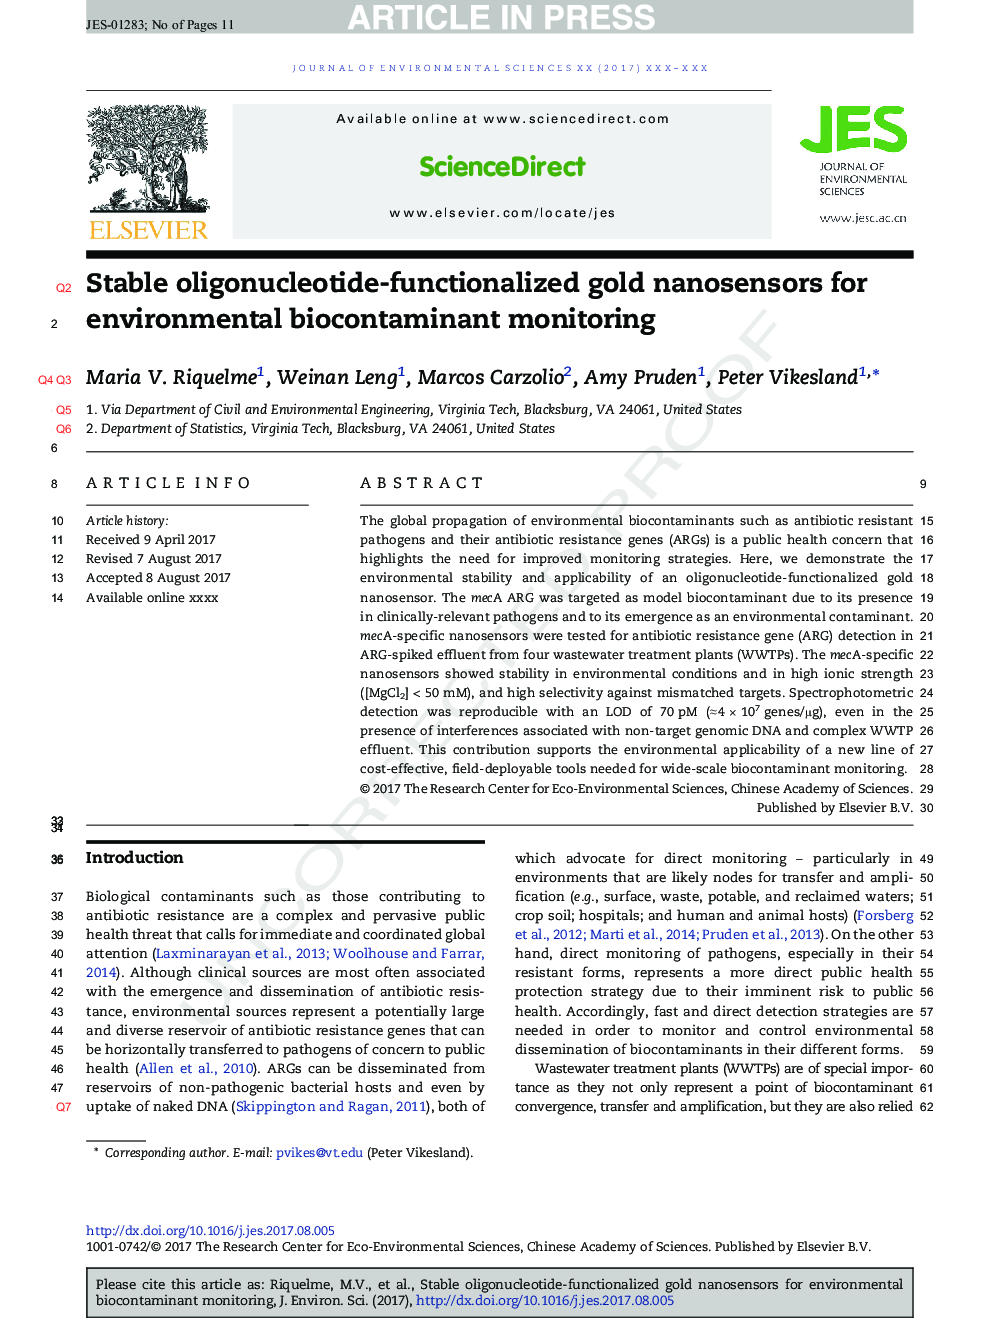 نانوسنسورهای طلای الیگونوکلئوتید پایدار برای کنترل زیست محیطی محیط زیست 